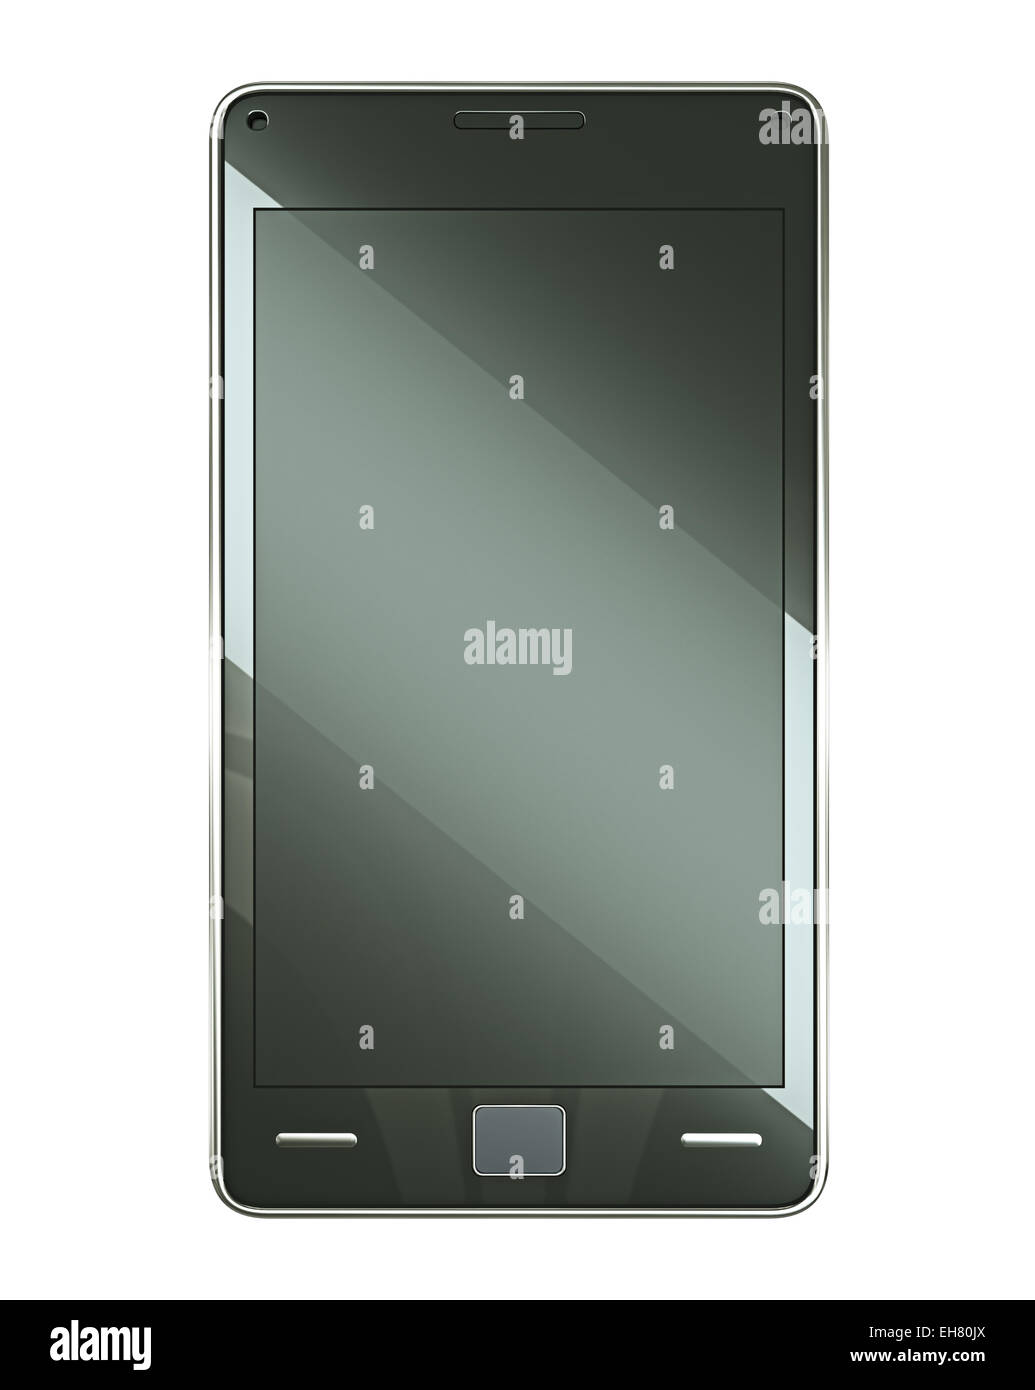 Vista frontal del teléfono inteligente con pantalla táctil aislado en blanco Foto de stock